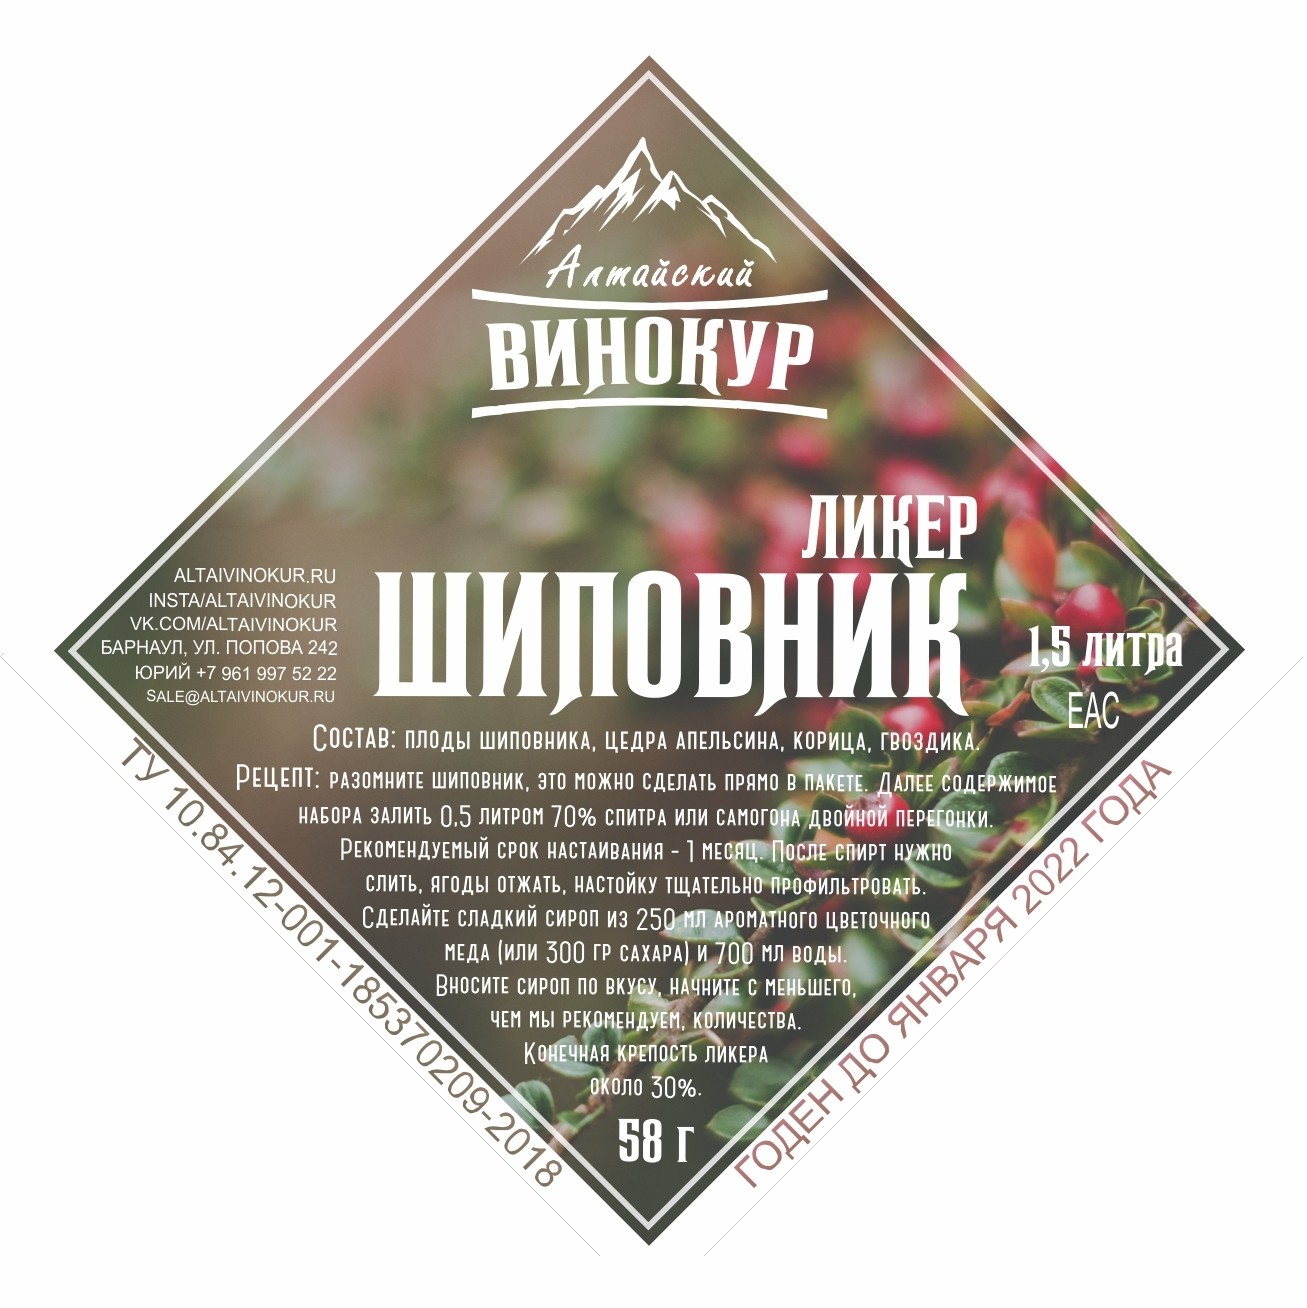 Настойка "Алтайский винокур" Шиповник. Набор трав и пряностей